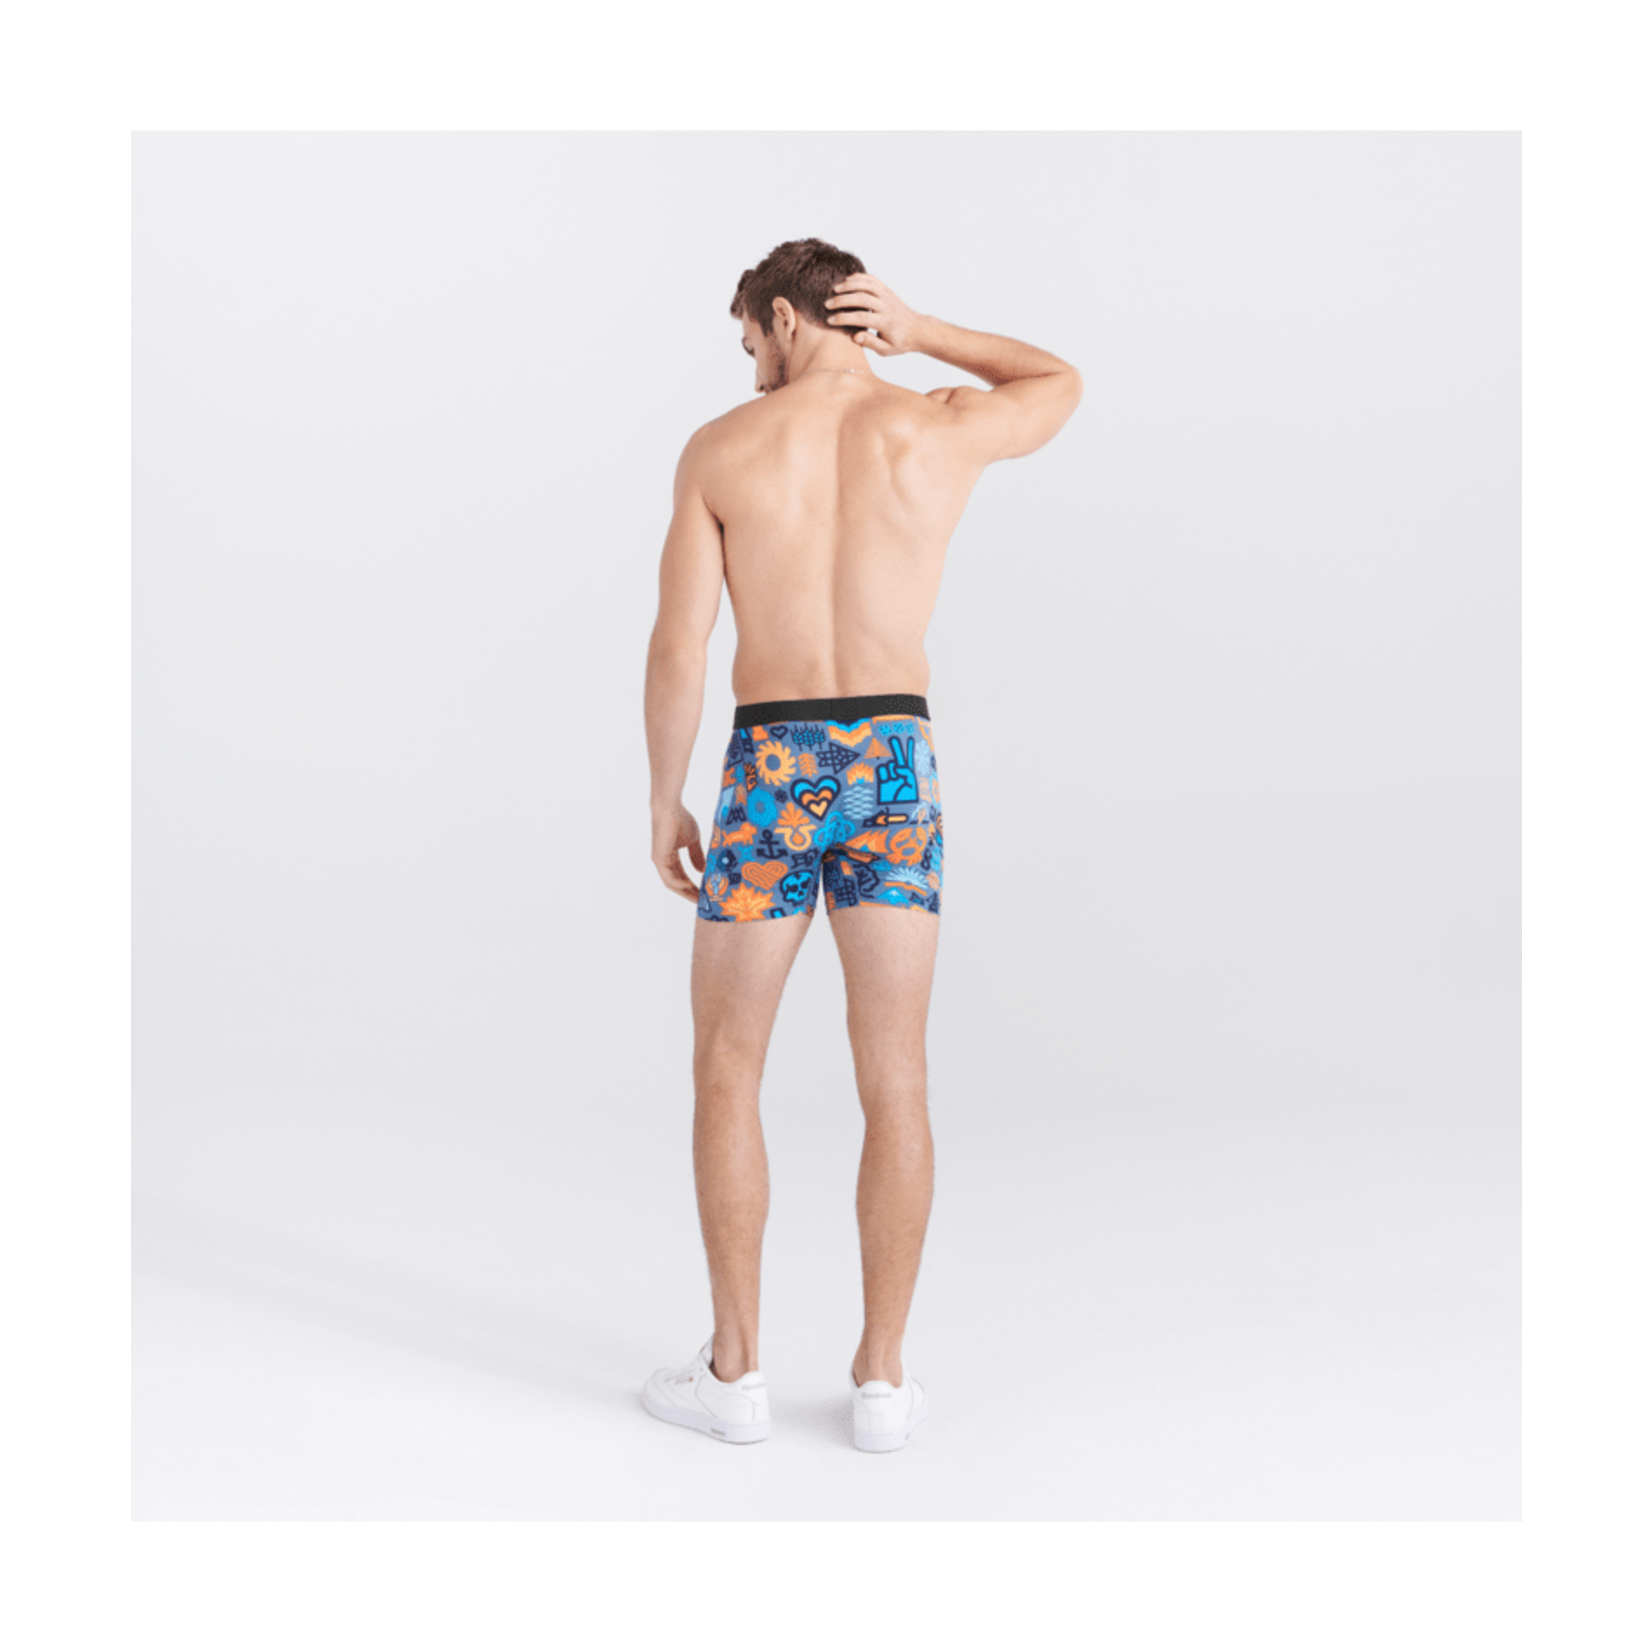 SAXX Underwear Co. Men's Underwear - Daytripper Boxer Briefs with